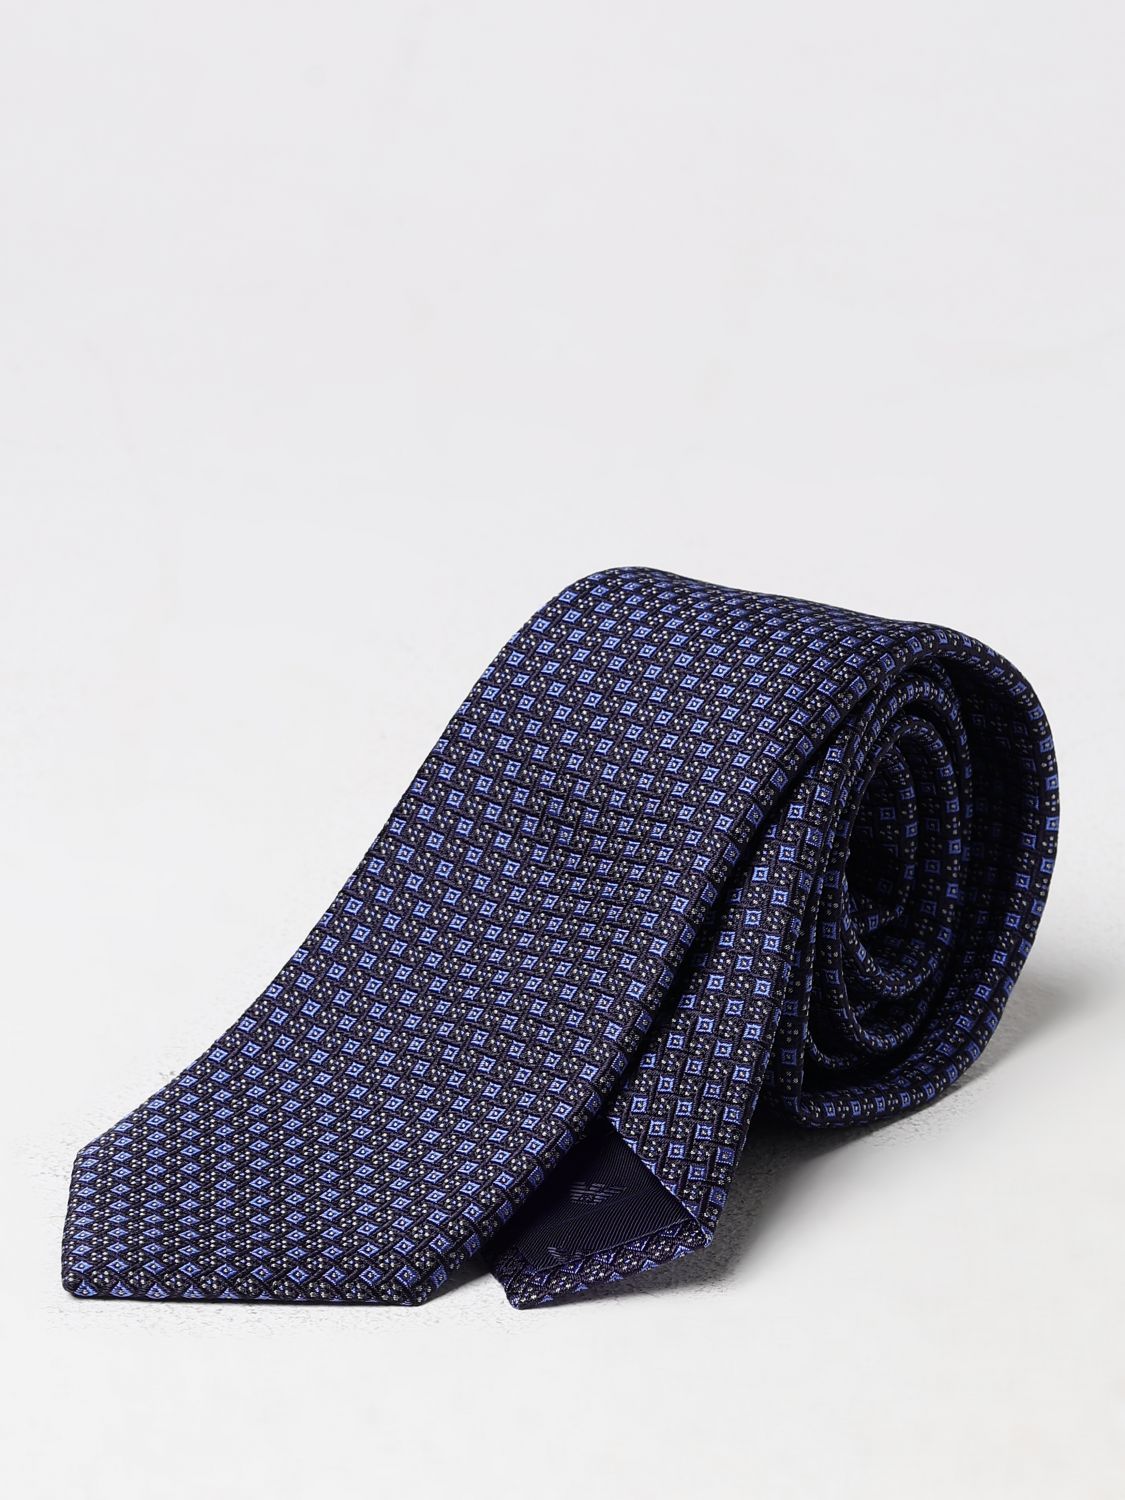 Cravatta EMPORIO ARMANI Uomo colore Azzurro